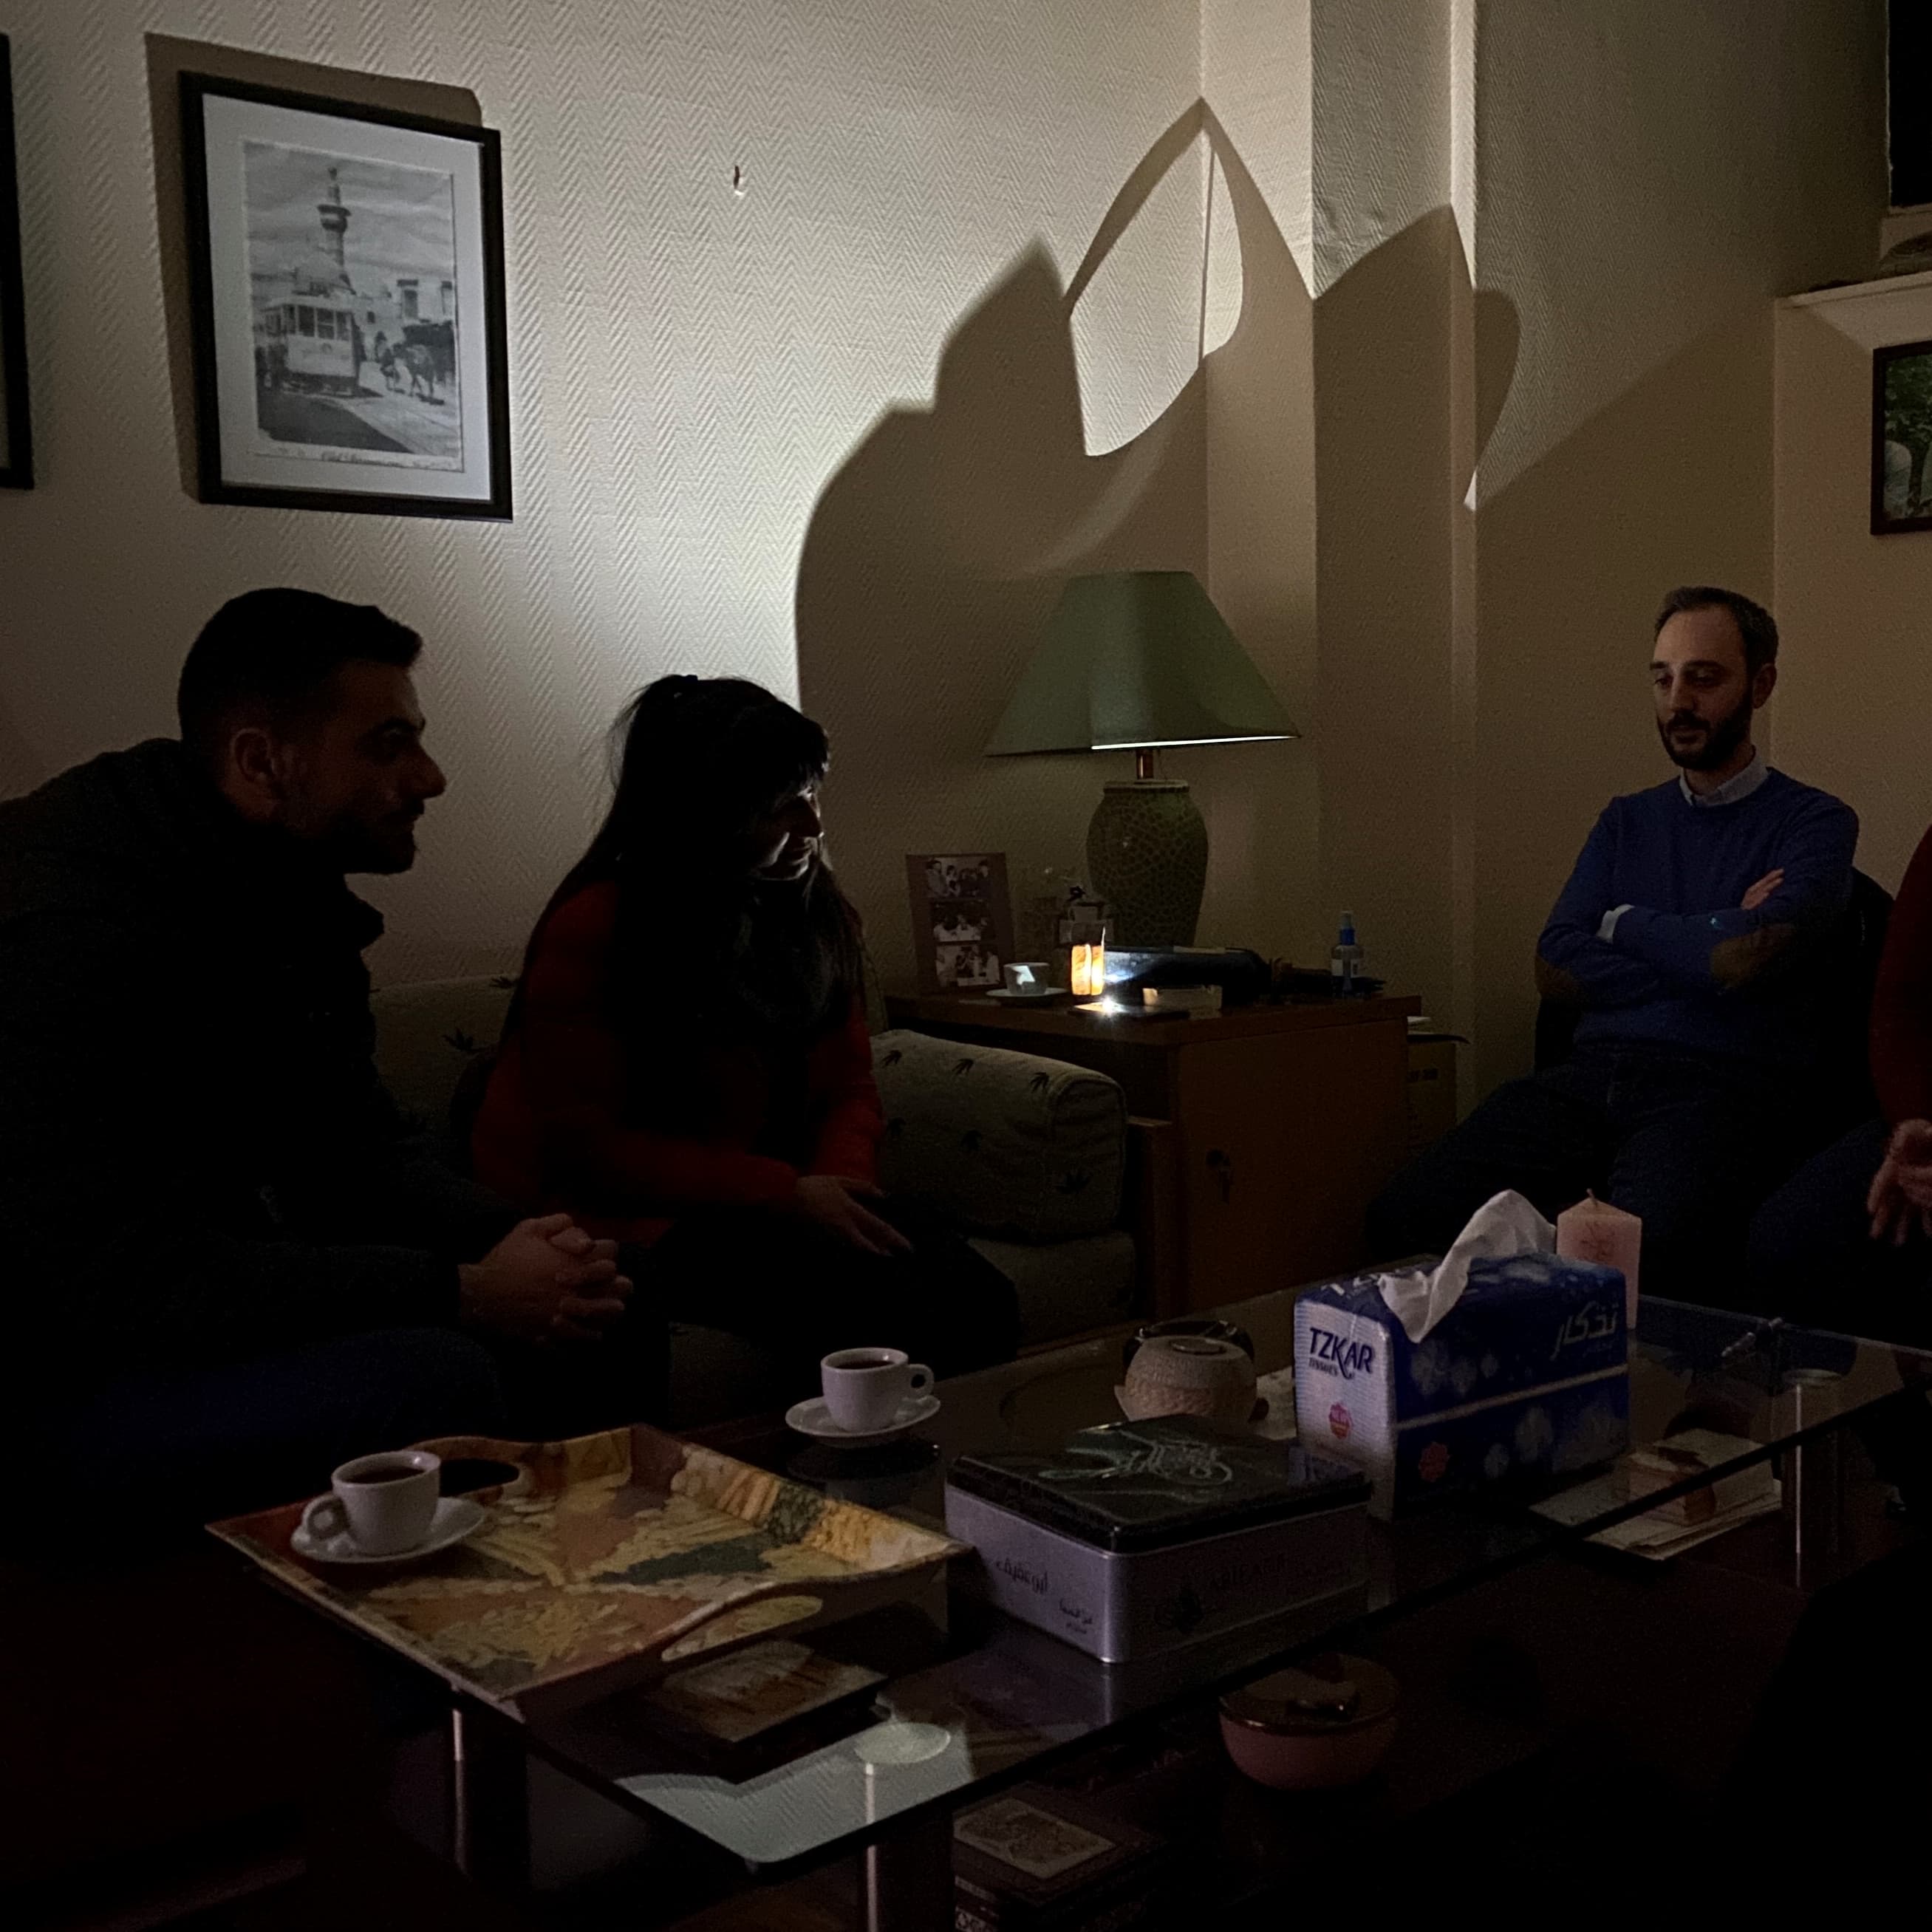 Kolme syyrialaista istuu hämärässä huoneessa kännykän valossa pöydän äärellä.